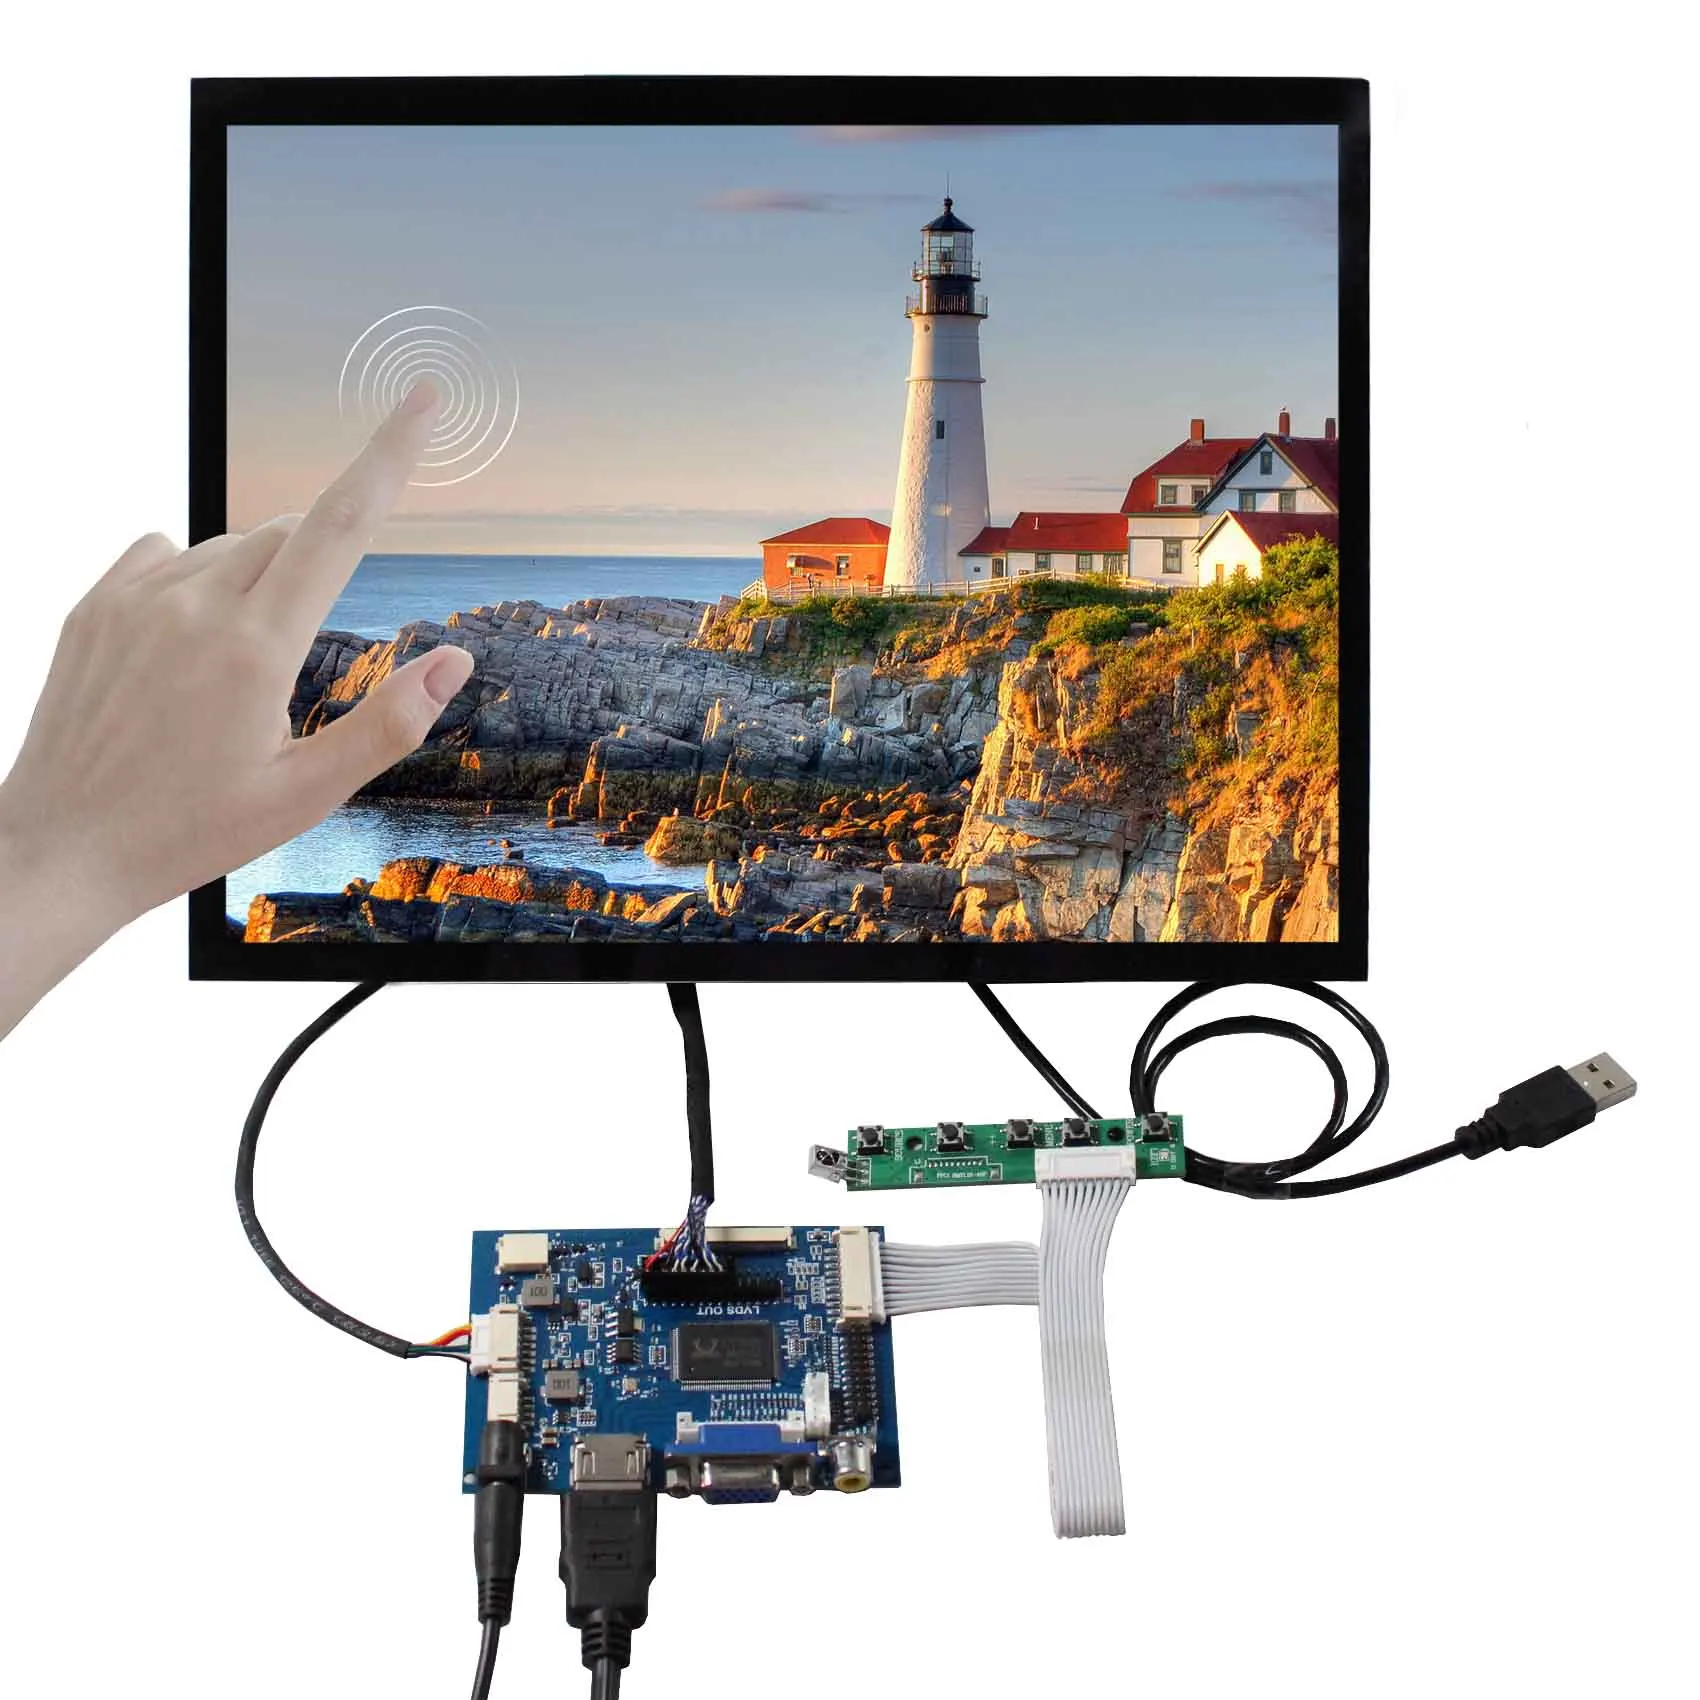 

HD MI VGA AV LVDs Board 12.1" 1024x768 4:3 600nit IPS Capacitive LCD Touchscreen